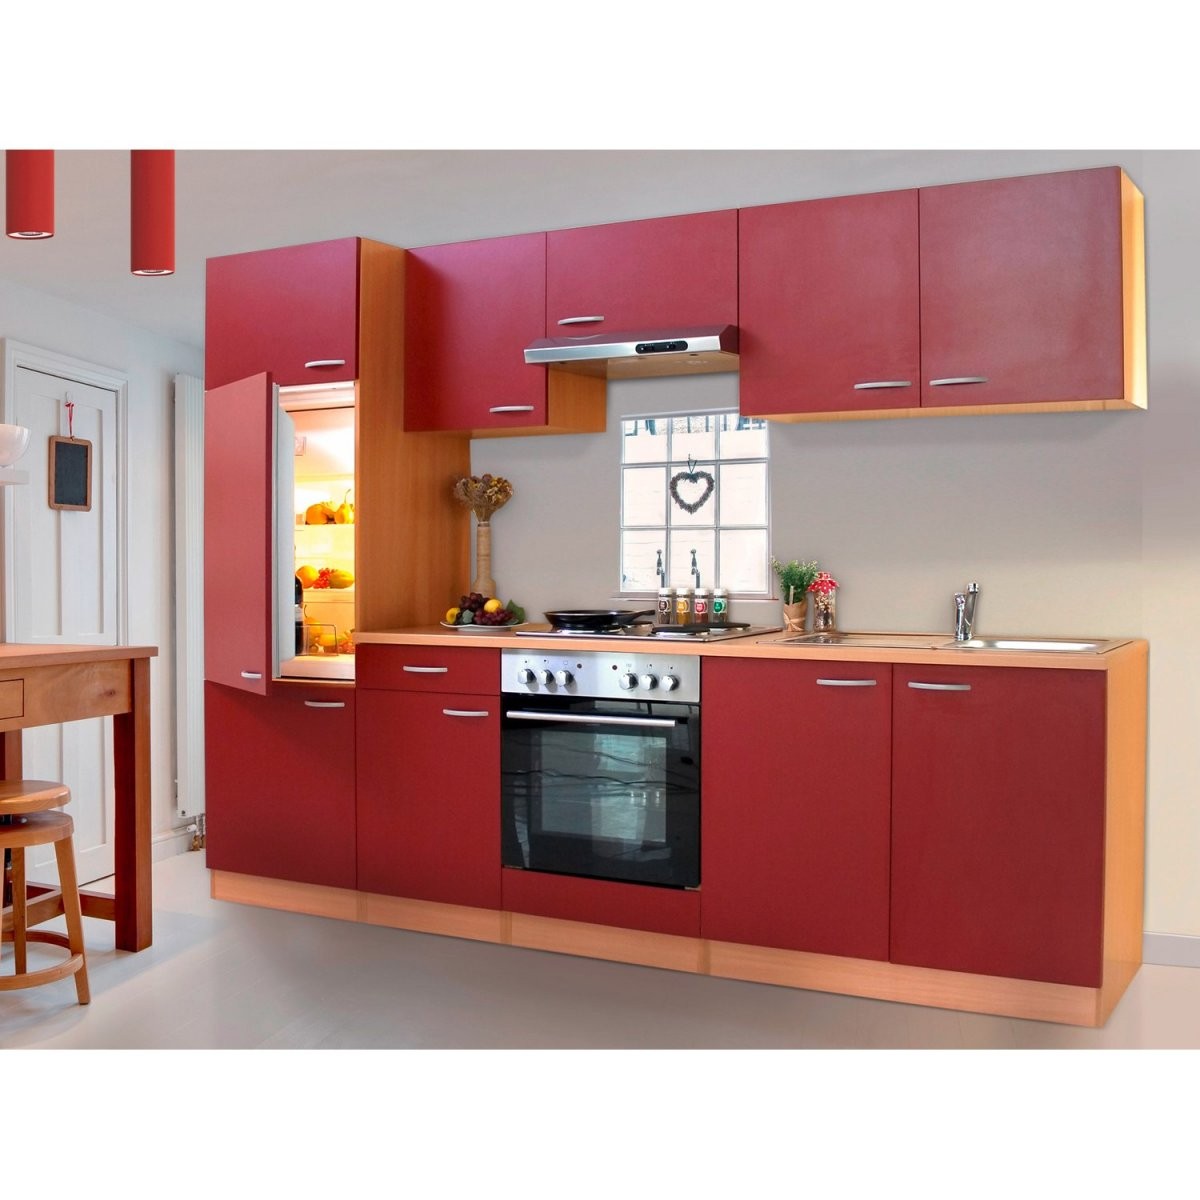 Küchenzeilen – Infos Und Günstig Online Kaufen von Küchenzeile Mit Elektrogeräten Ohne Kühlschrank Photo